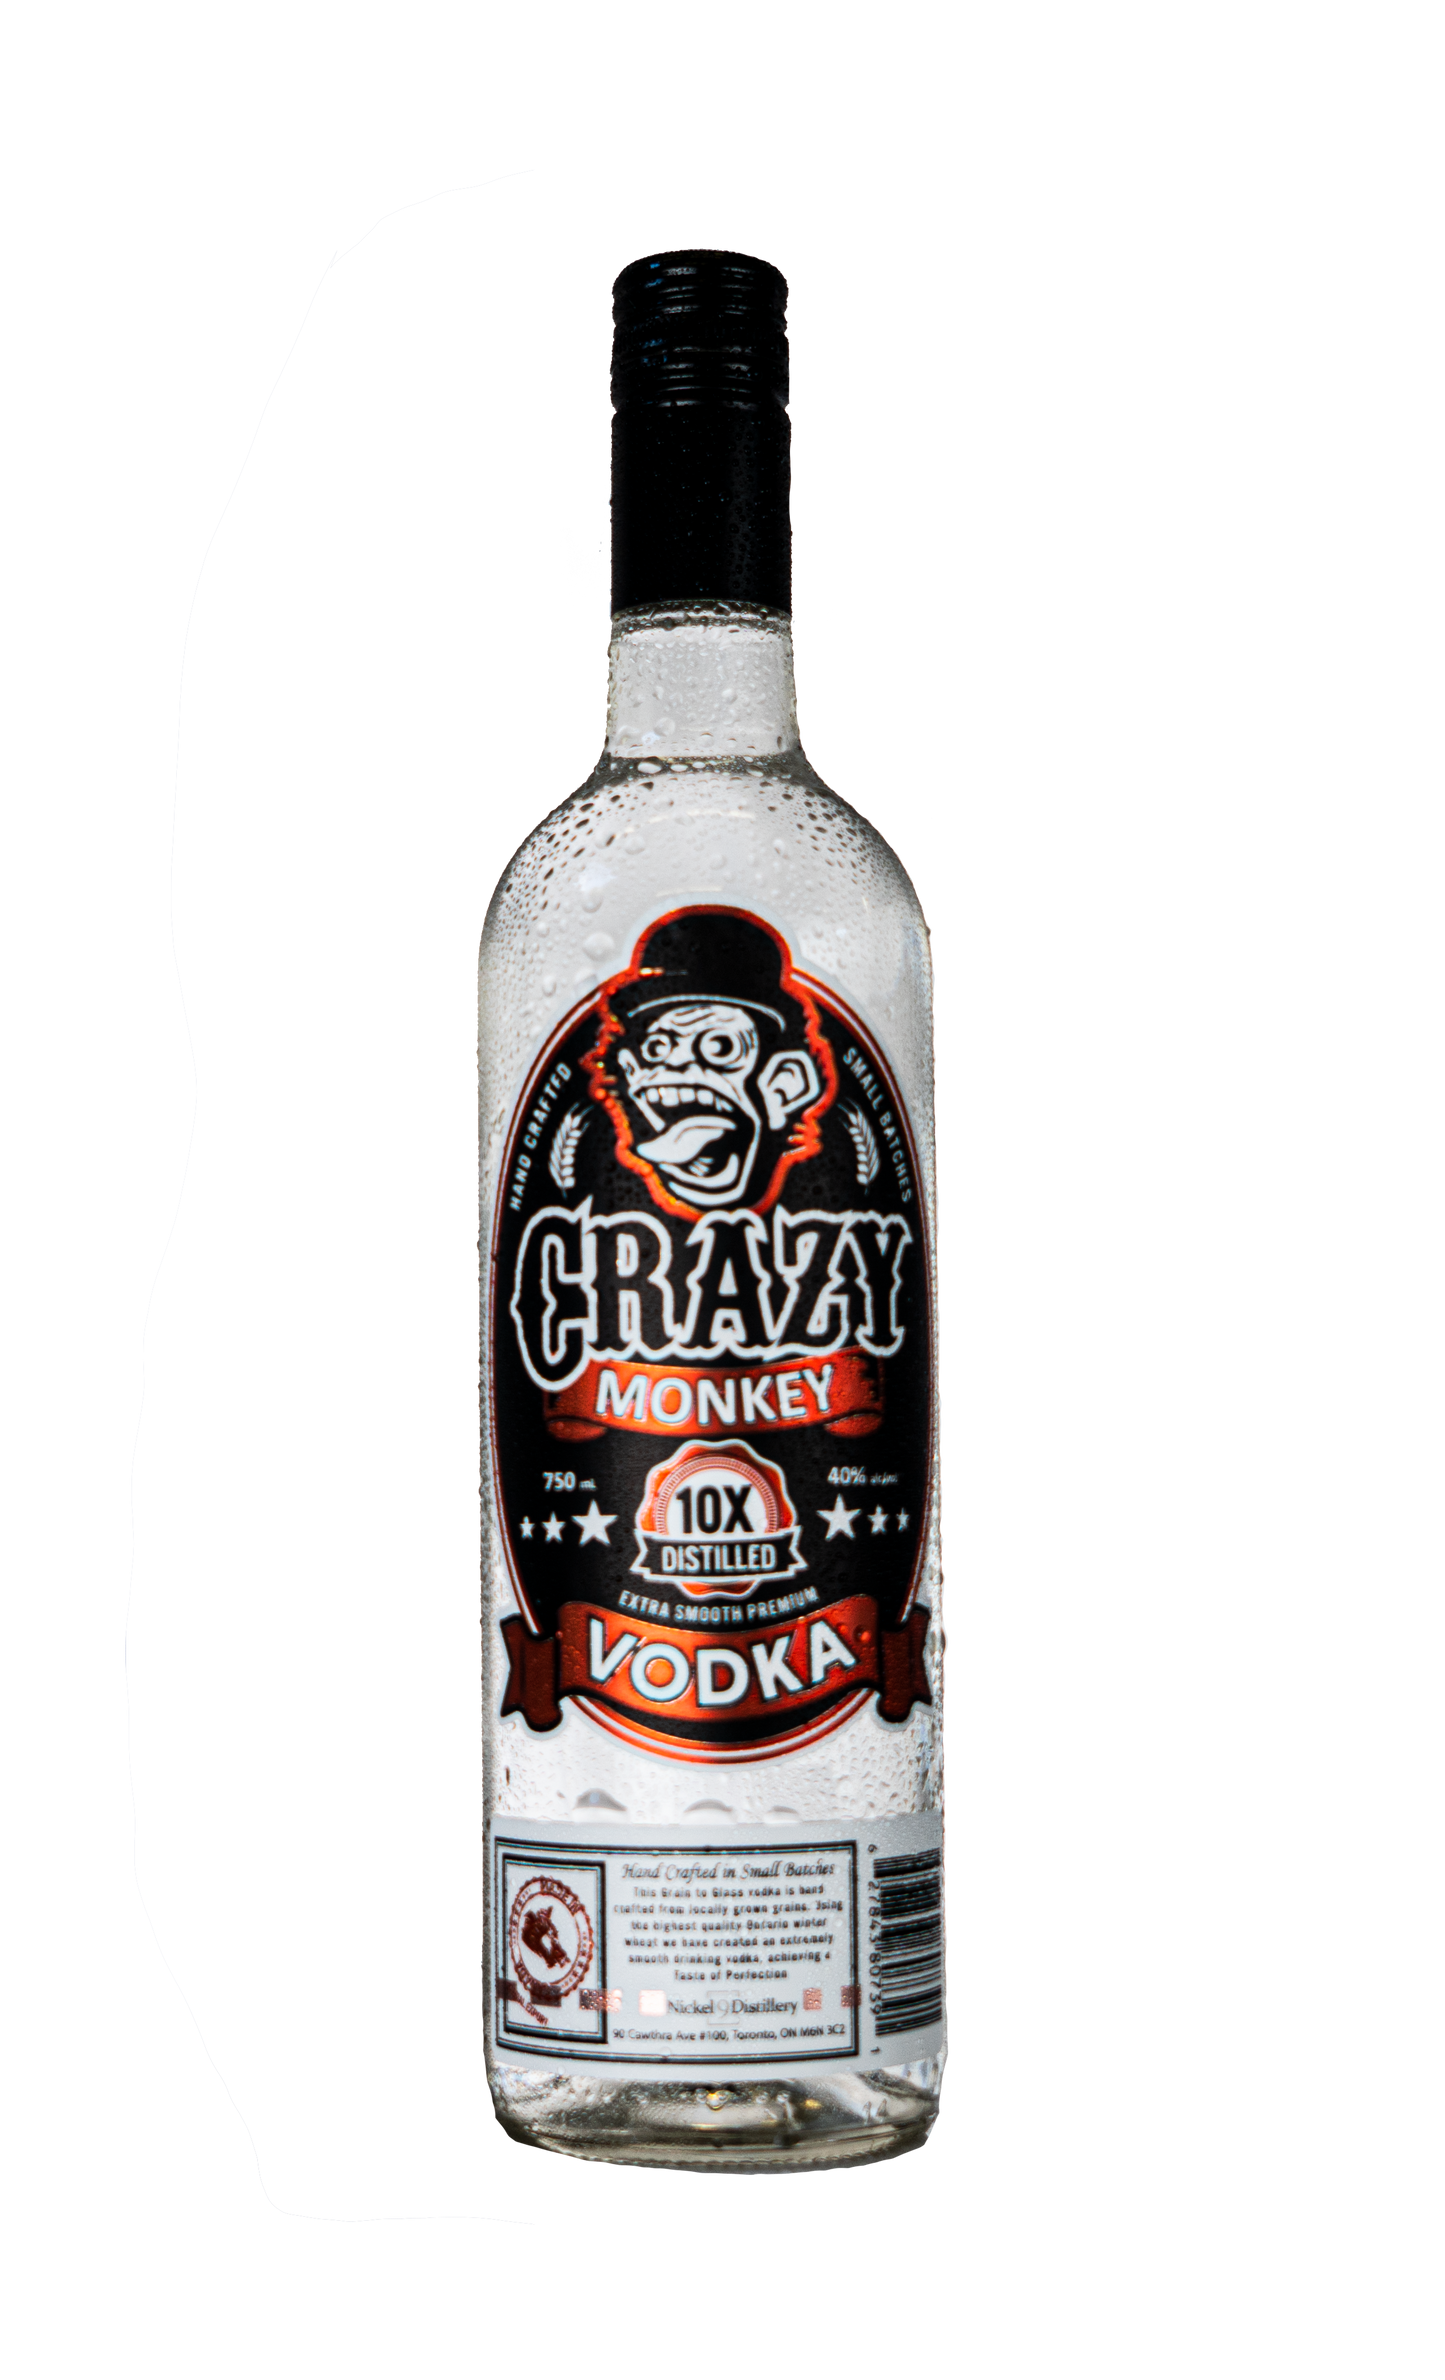 Crazy Monkey Vodka